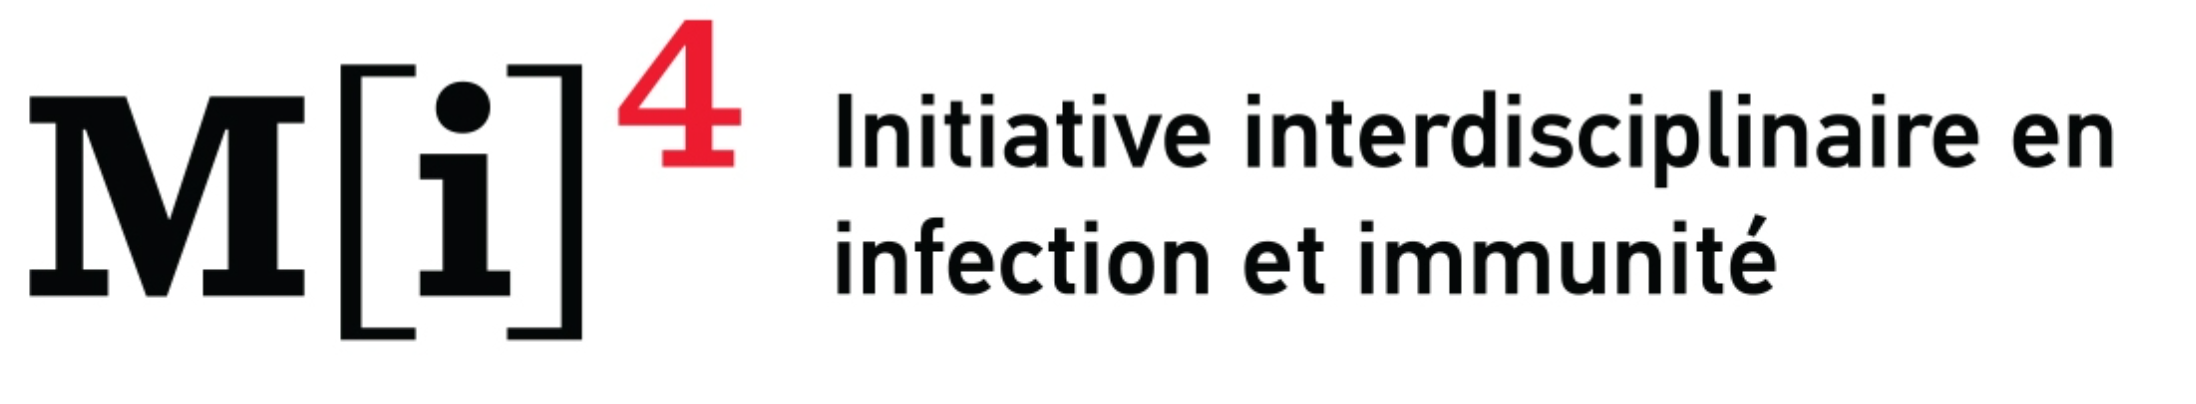 L’Initiative interdisciplinaire en infection et immunité de McGill